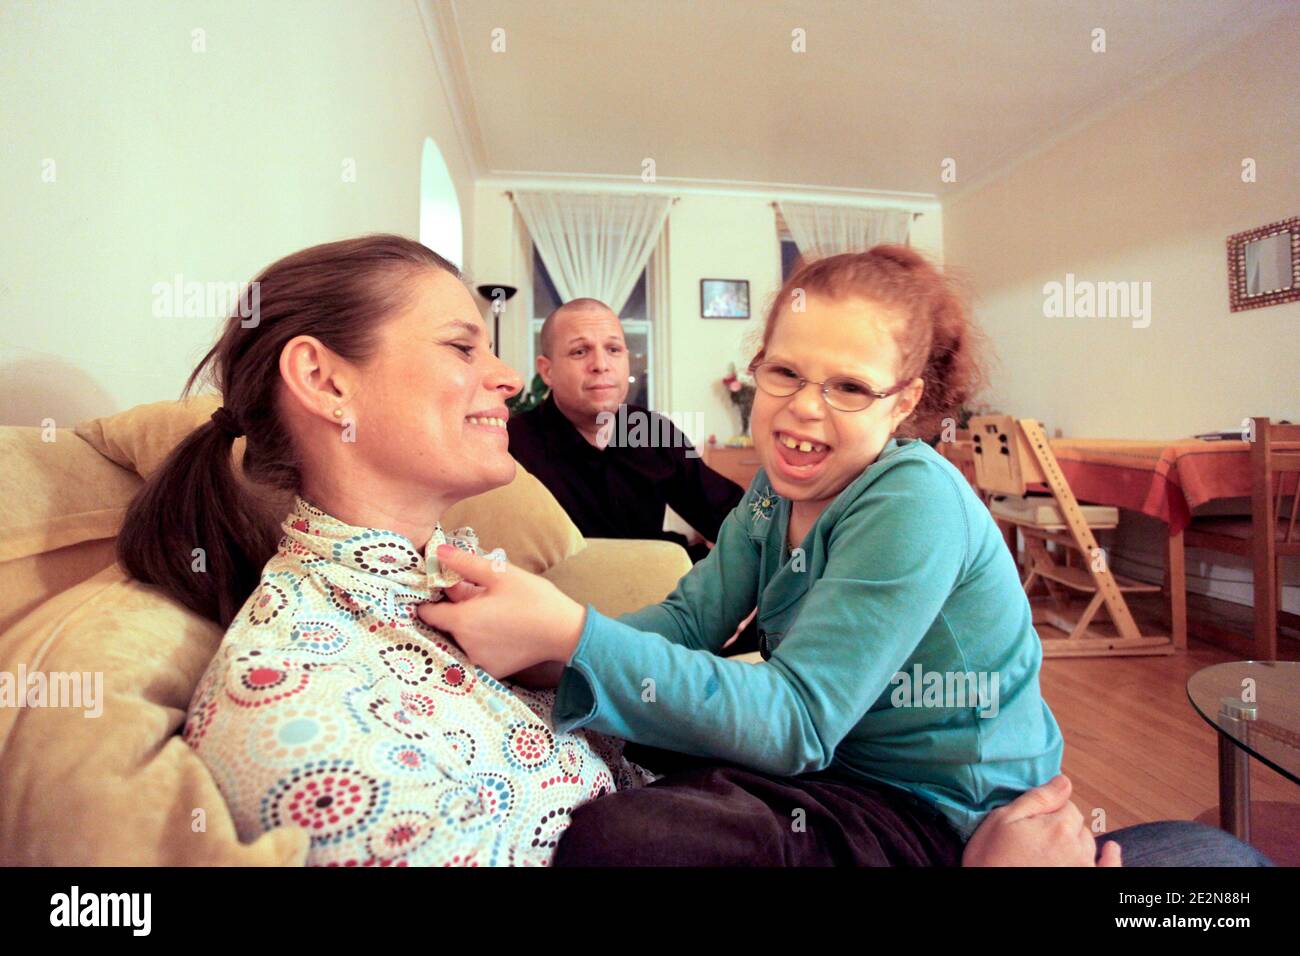 Sophie Barlagne discute avec sa fillle Rachel sous le regard du pere David  Barlagne dans leur appartement de Montreal, Quebec, Canada le 18 Fevrier,  2010. Une famille francaise, expatriee au Canada depuis